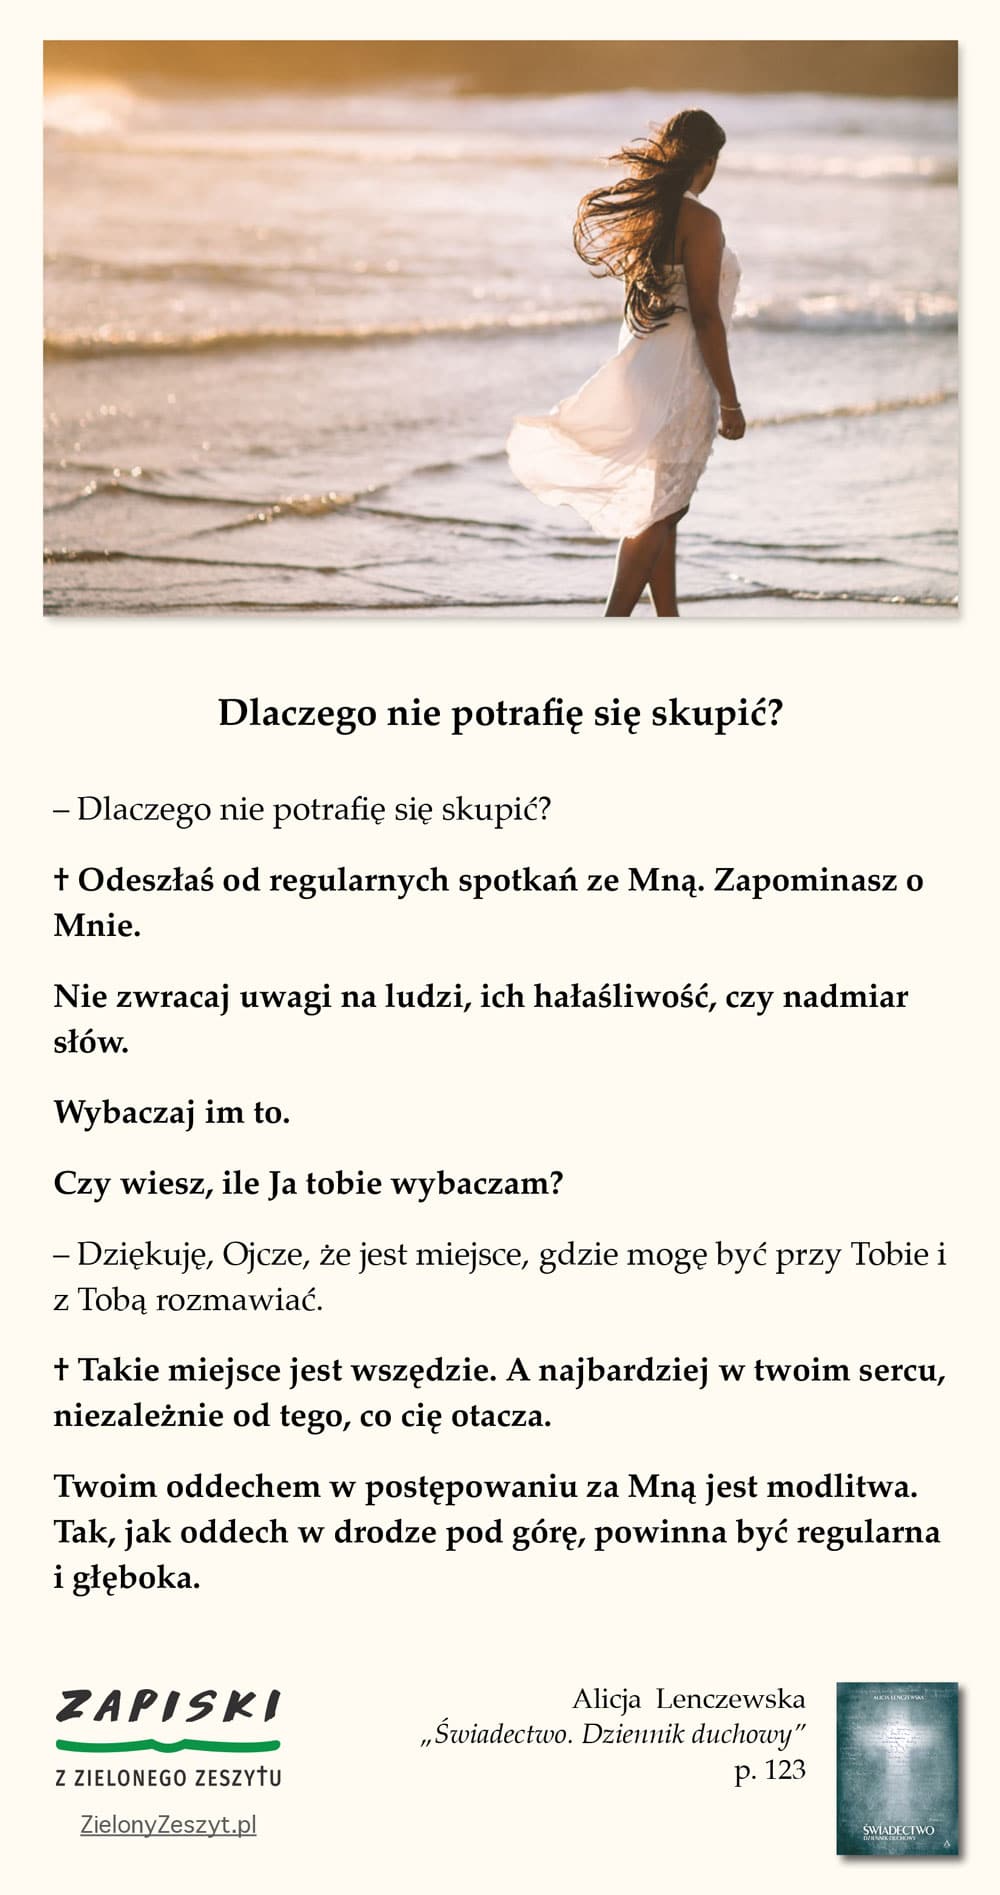 Alicja Lenczewska, „Świadectwo. Dziennik duchowy”, p. 123 (Dlaczego nie potrafię się skupić?)